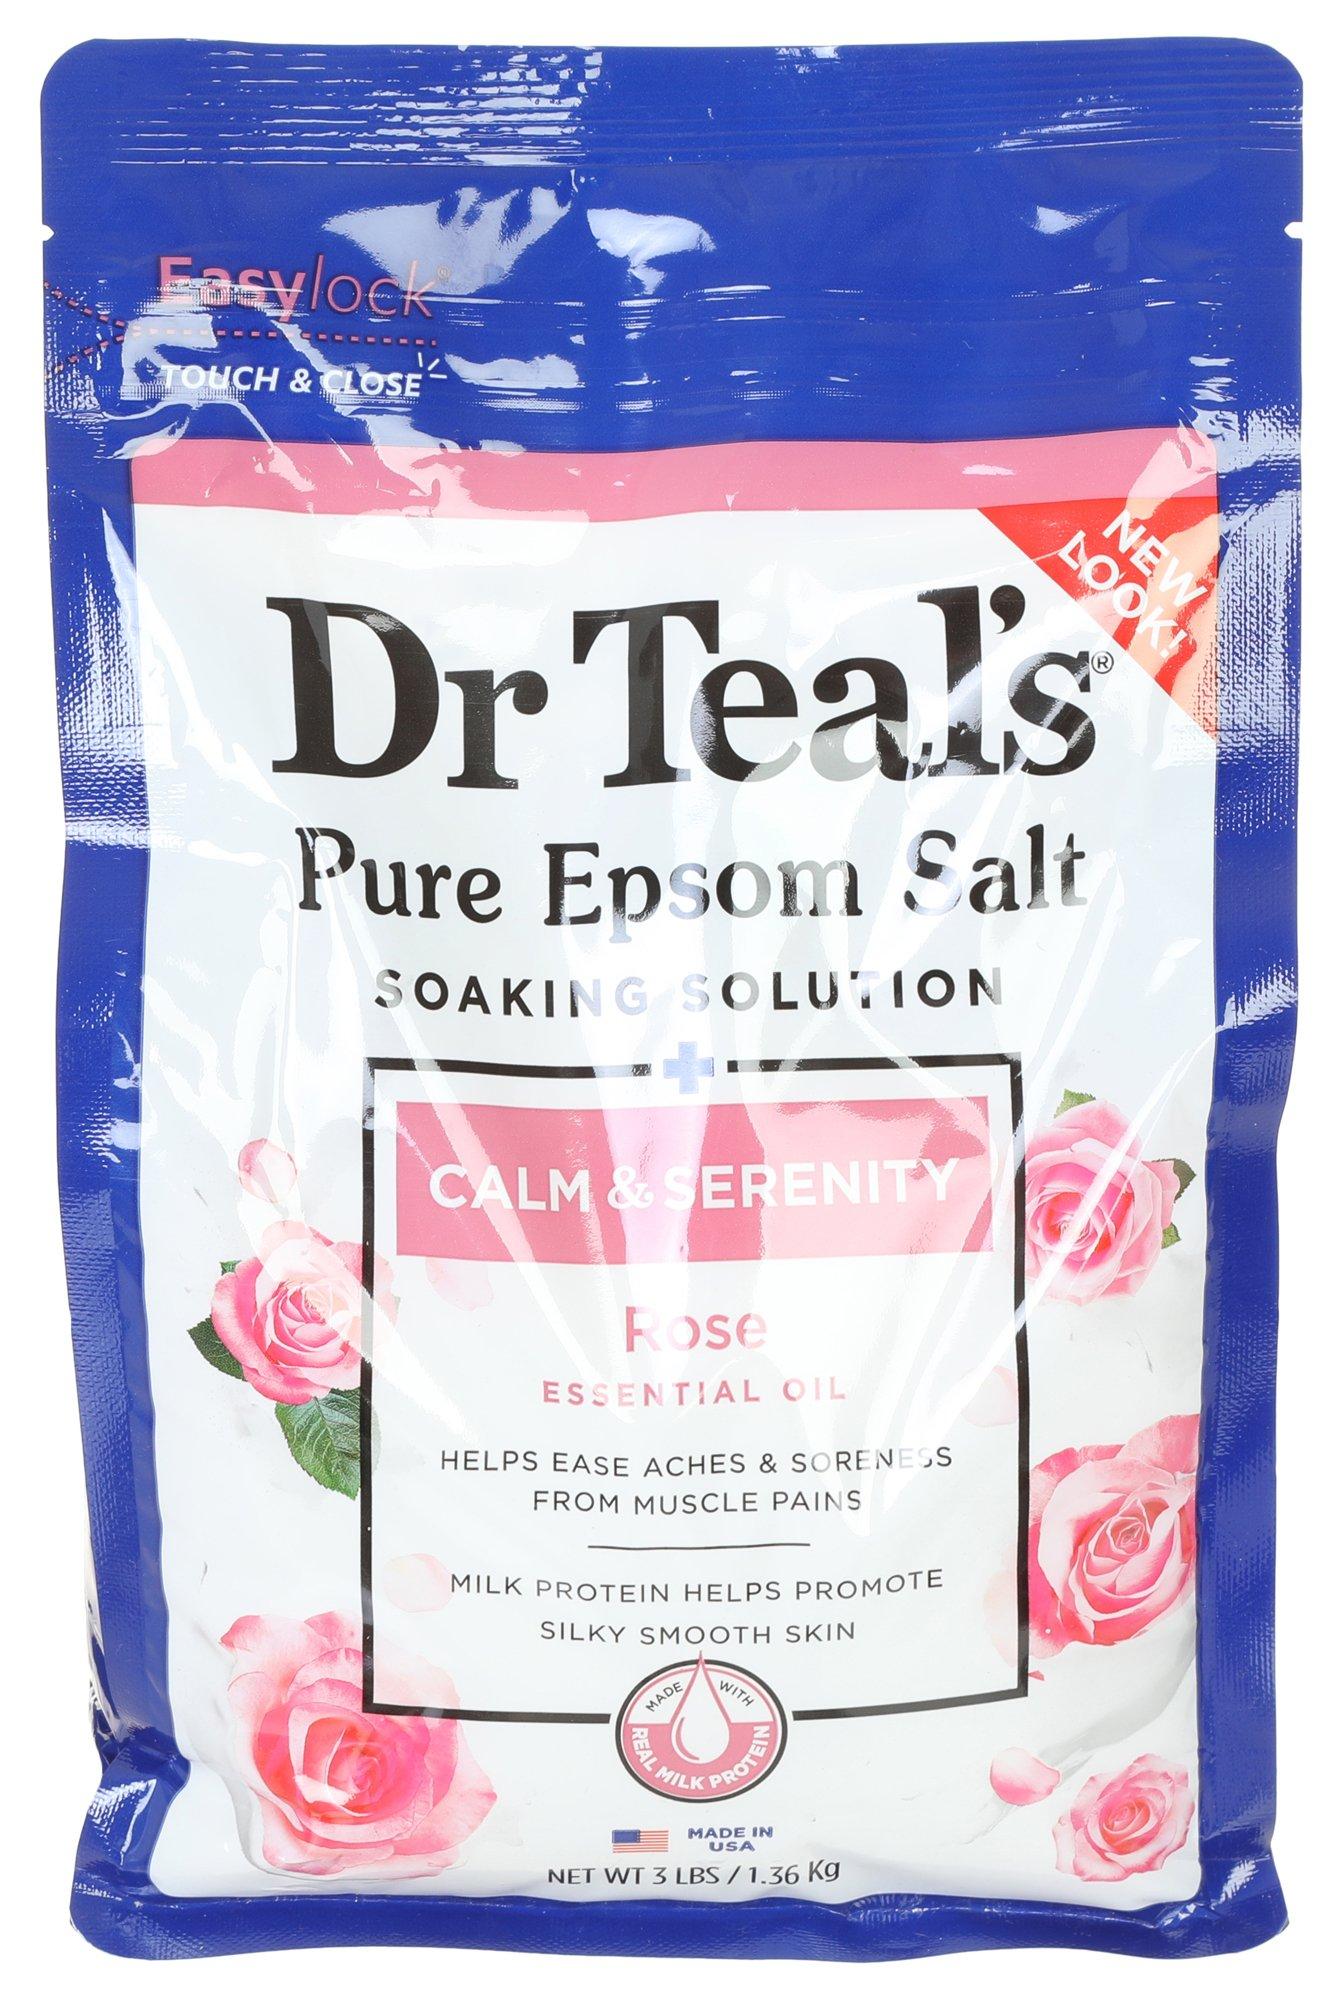 Dr Teals Calm & Serenity Rose Epsom Salt Soaking Solution